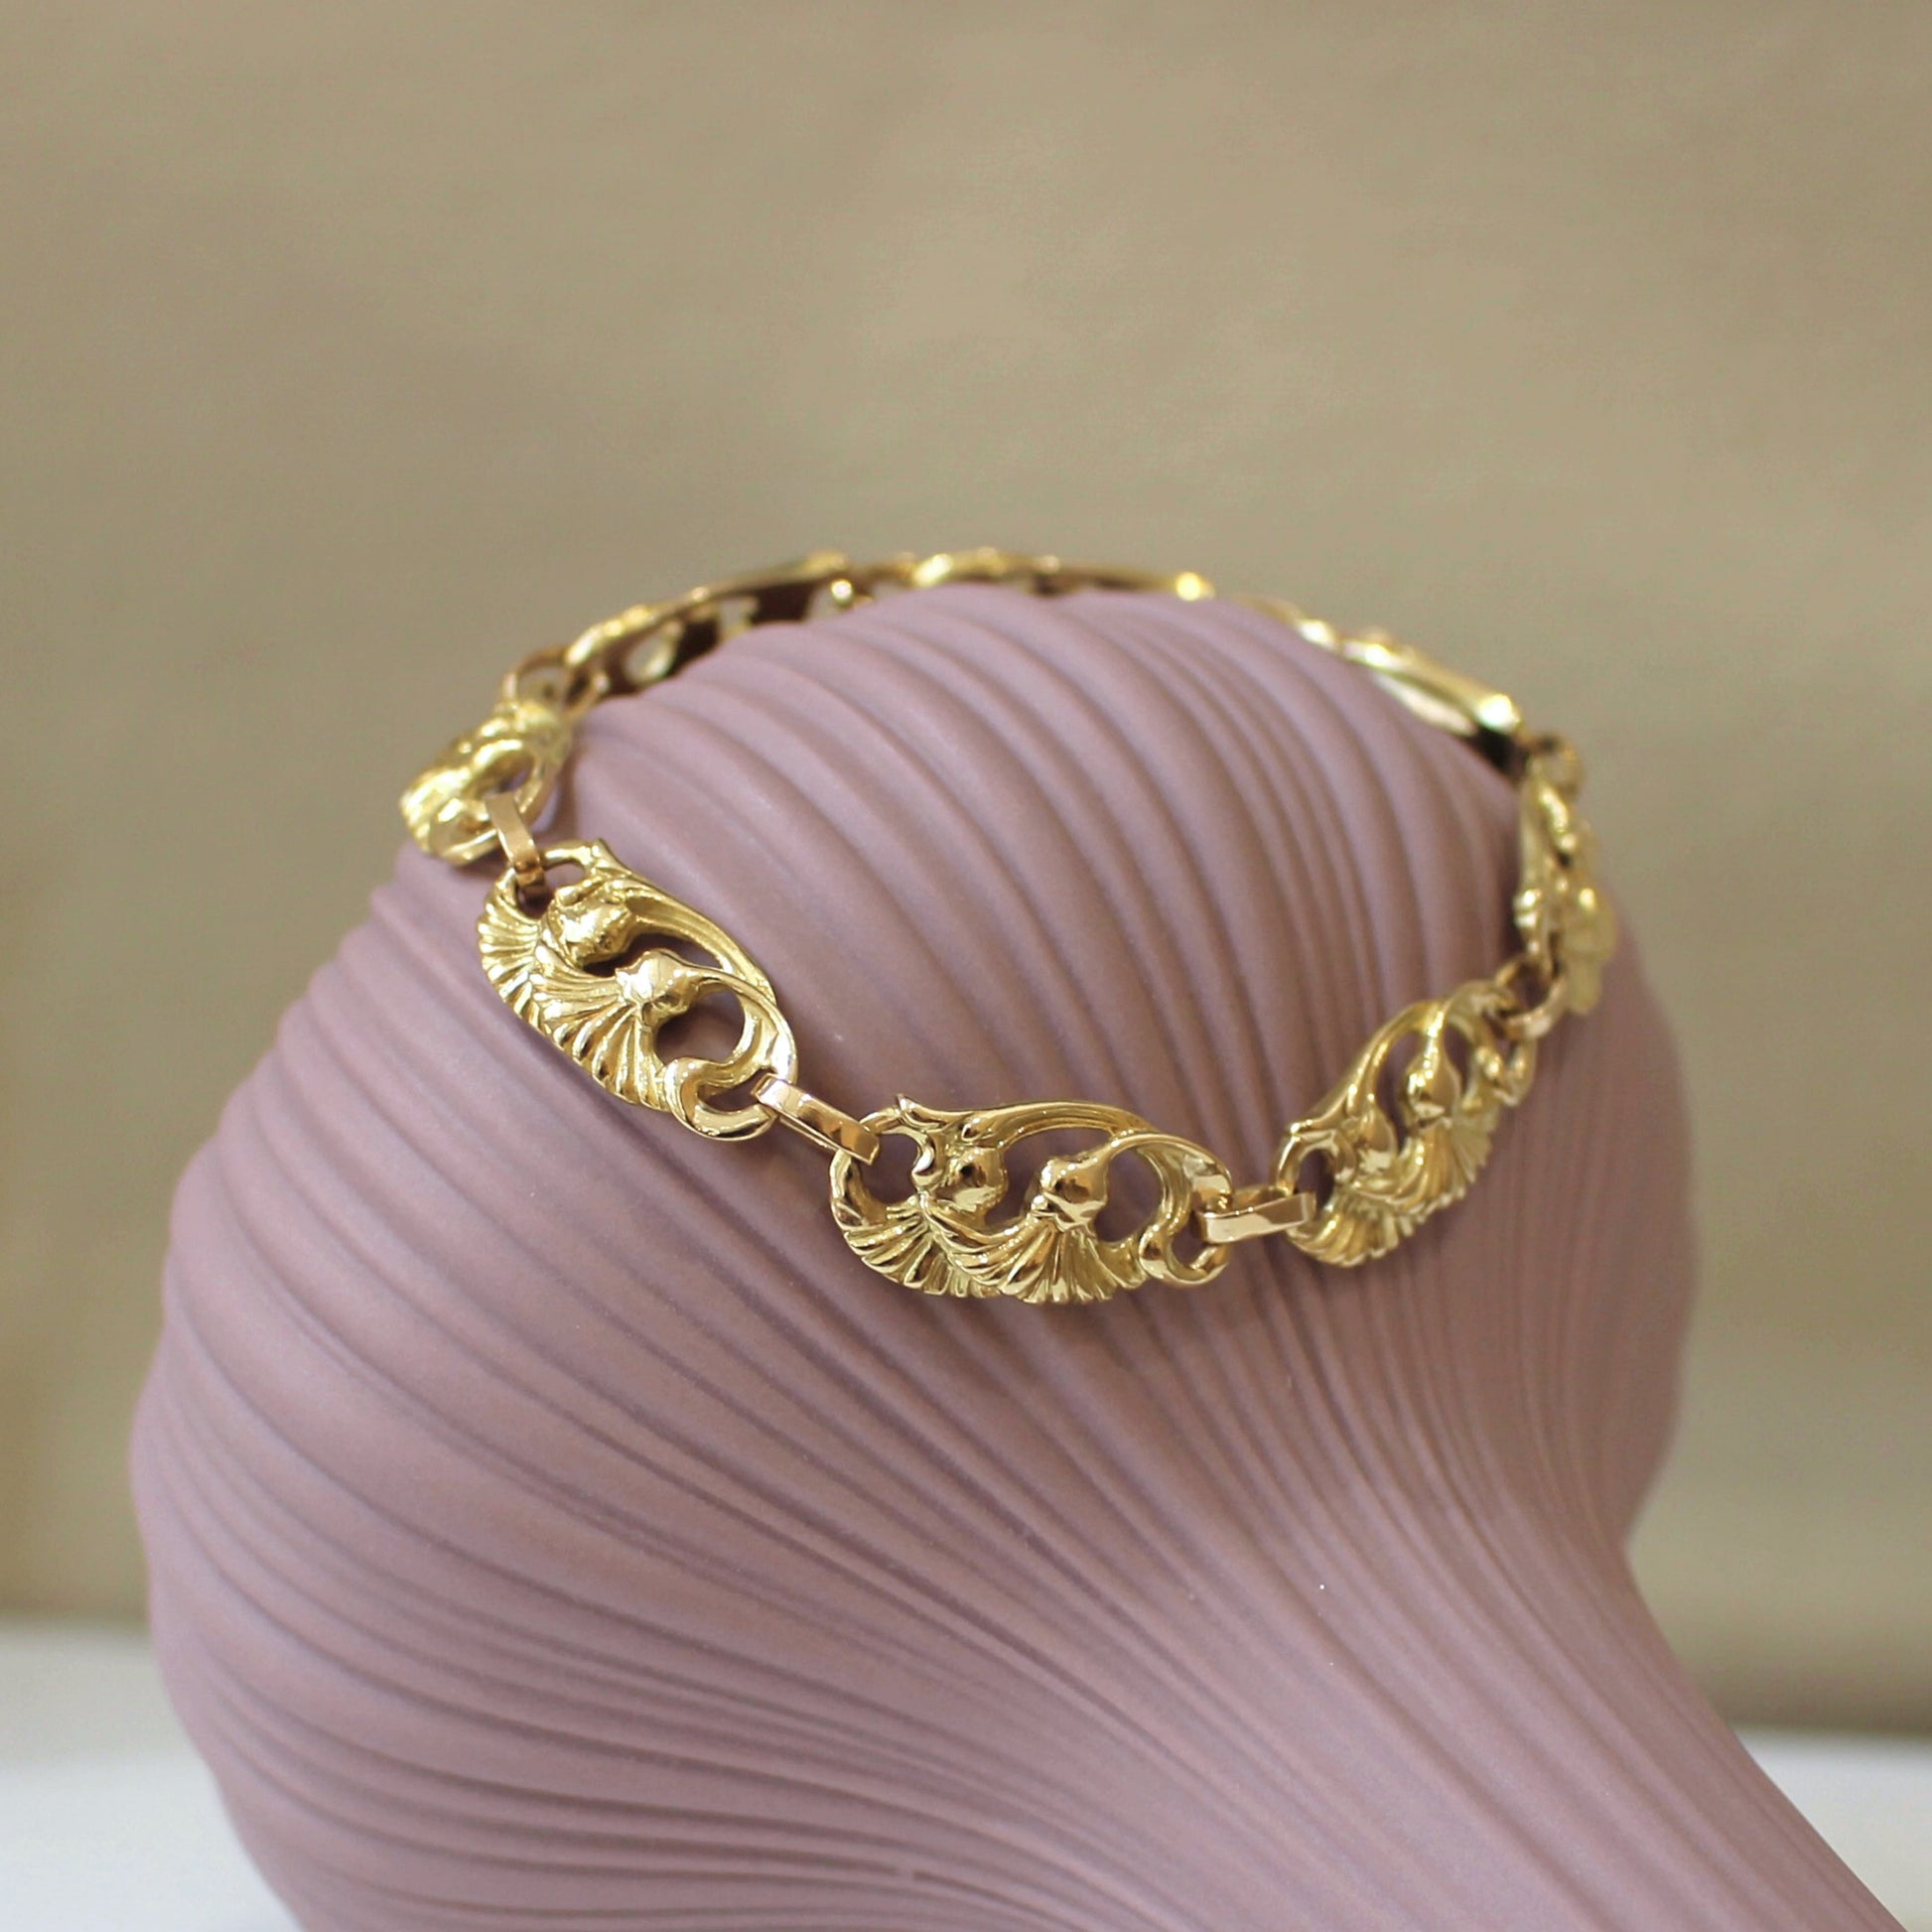 ② Magnifique bracelet ancien. — Bracelets — 2ememain